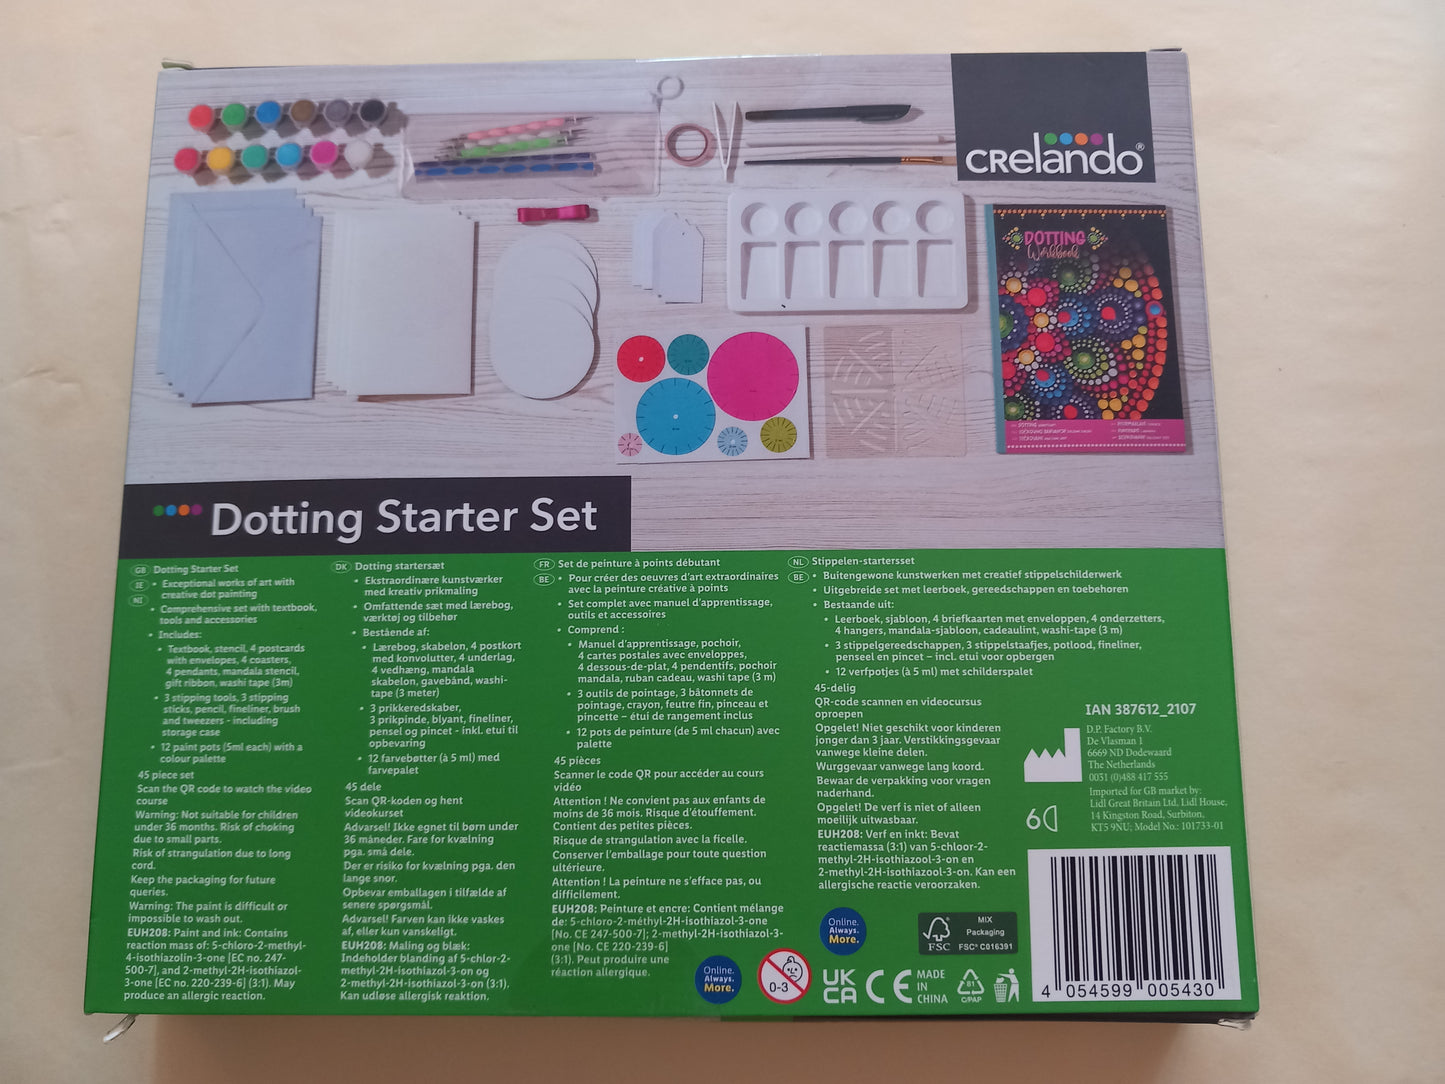 Dotting starter set